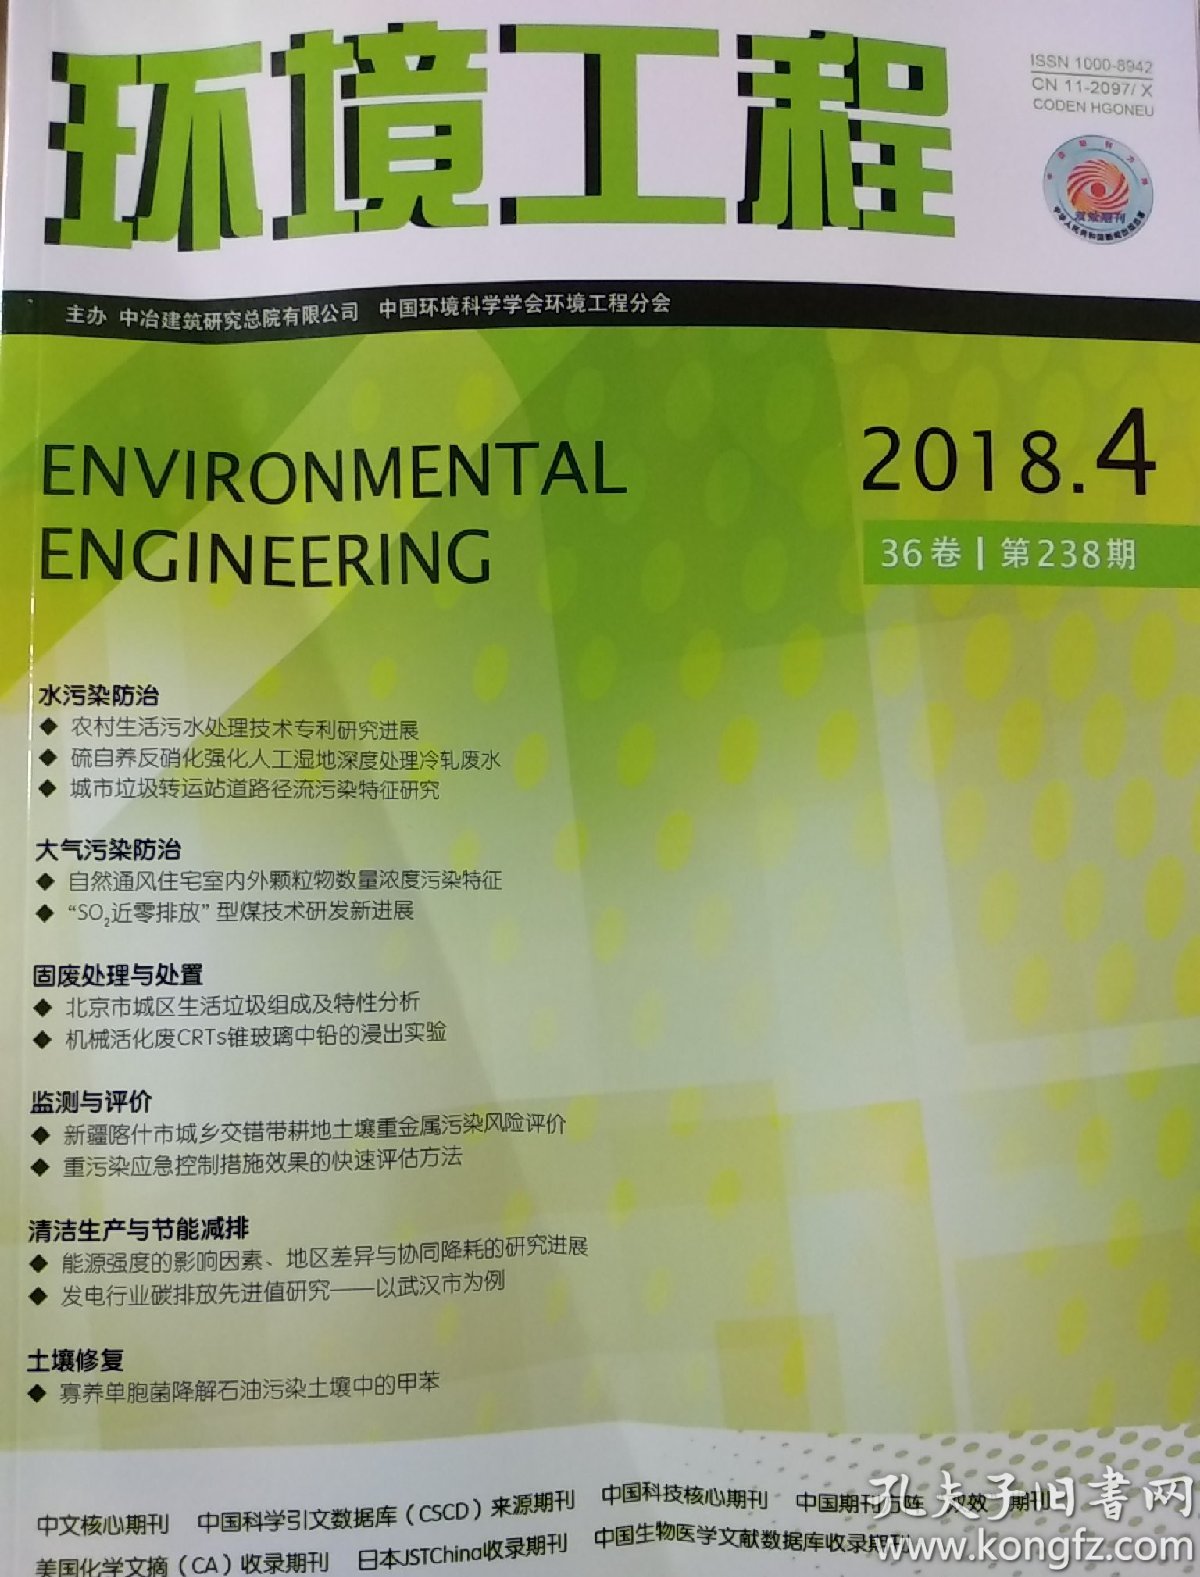 环境工程 杂志 2018 4月 邮发代号82-64